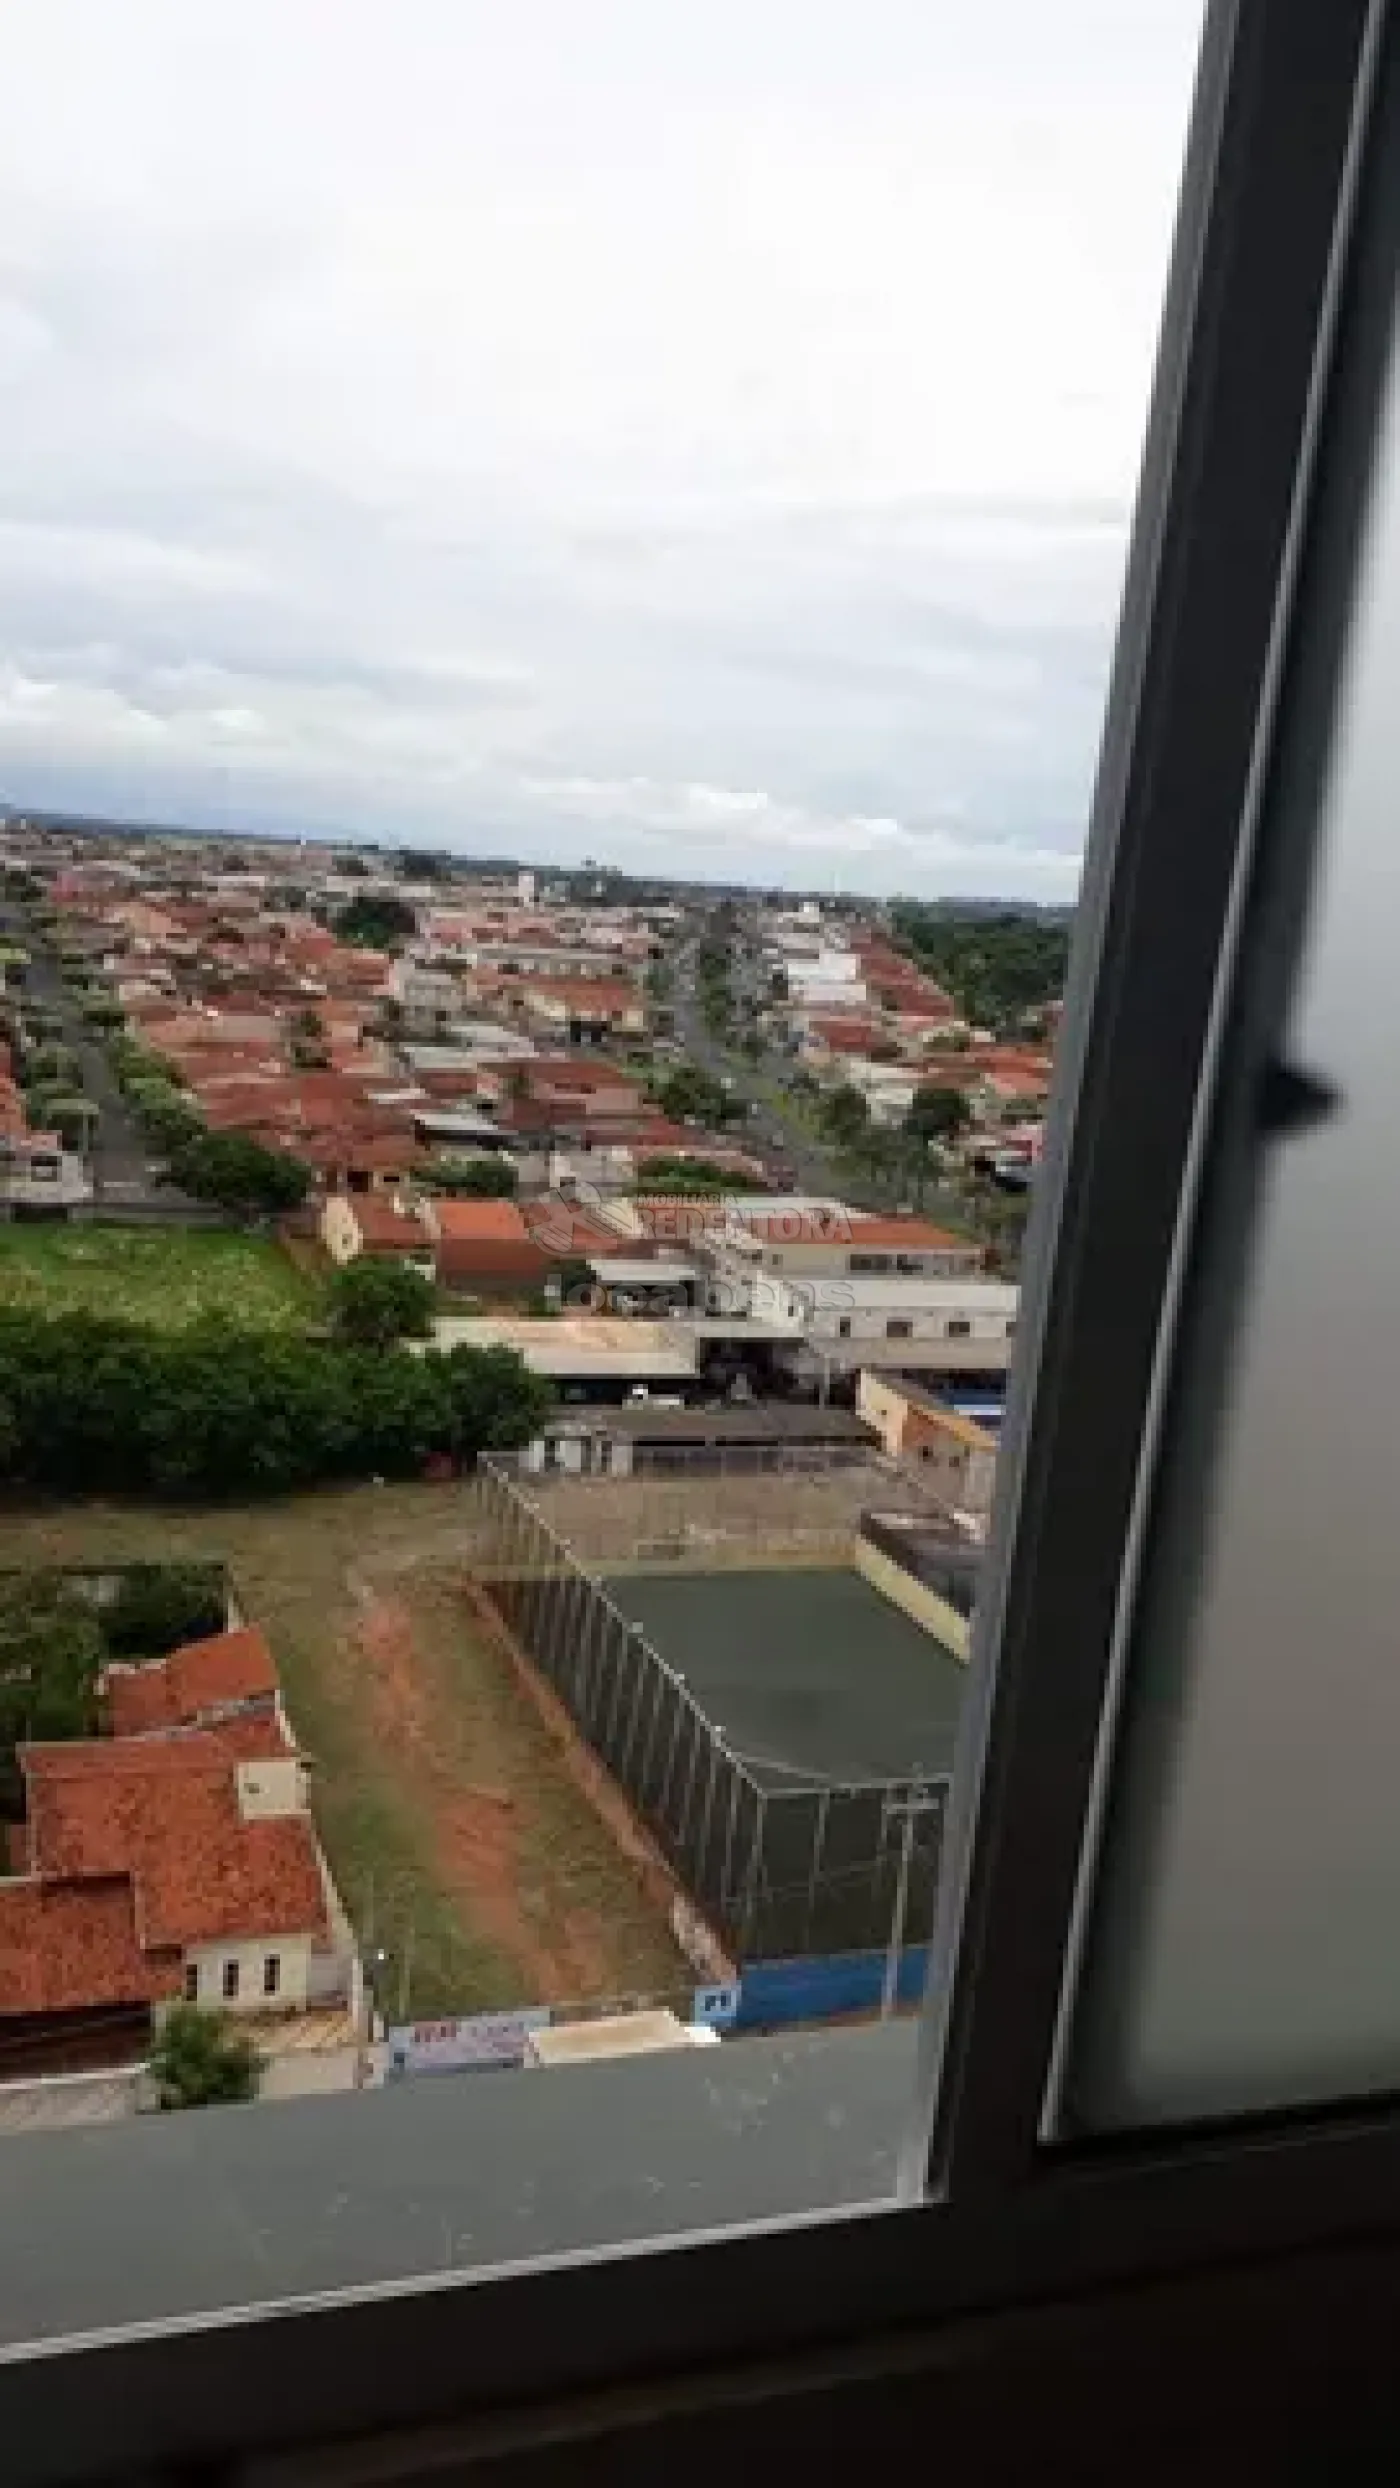 Comprar Apartamento / Padrão em São José do Rio Preto R$ 245.000,00 - Foto 7